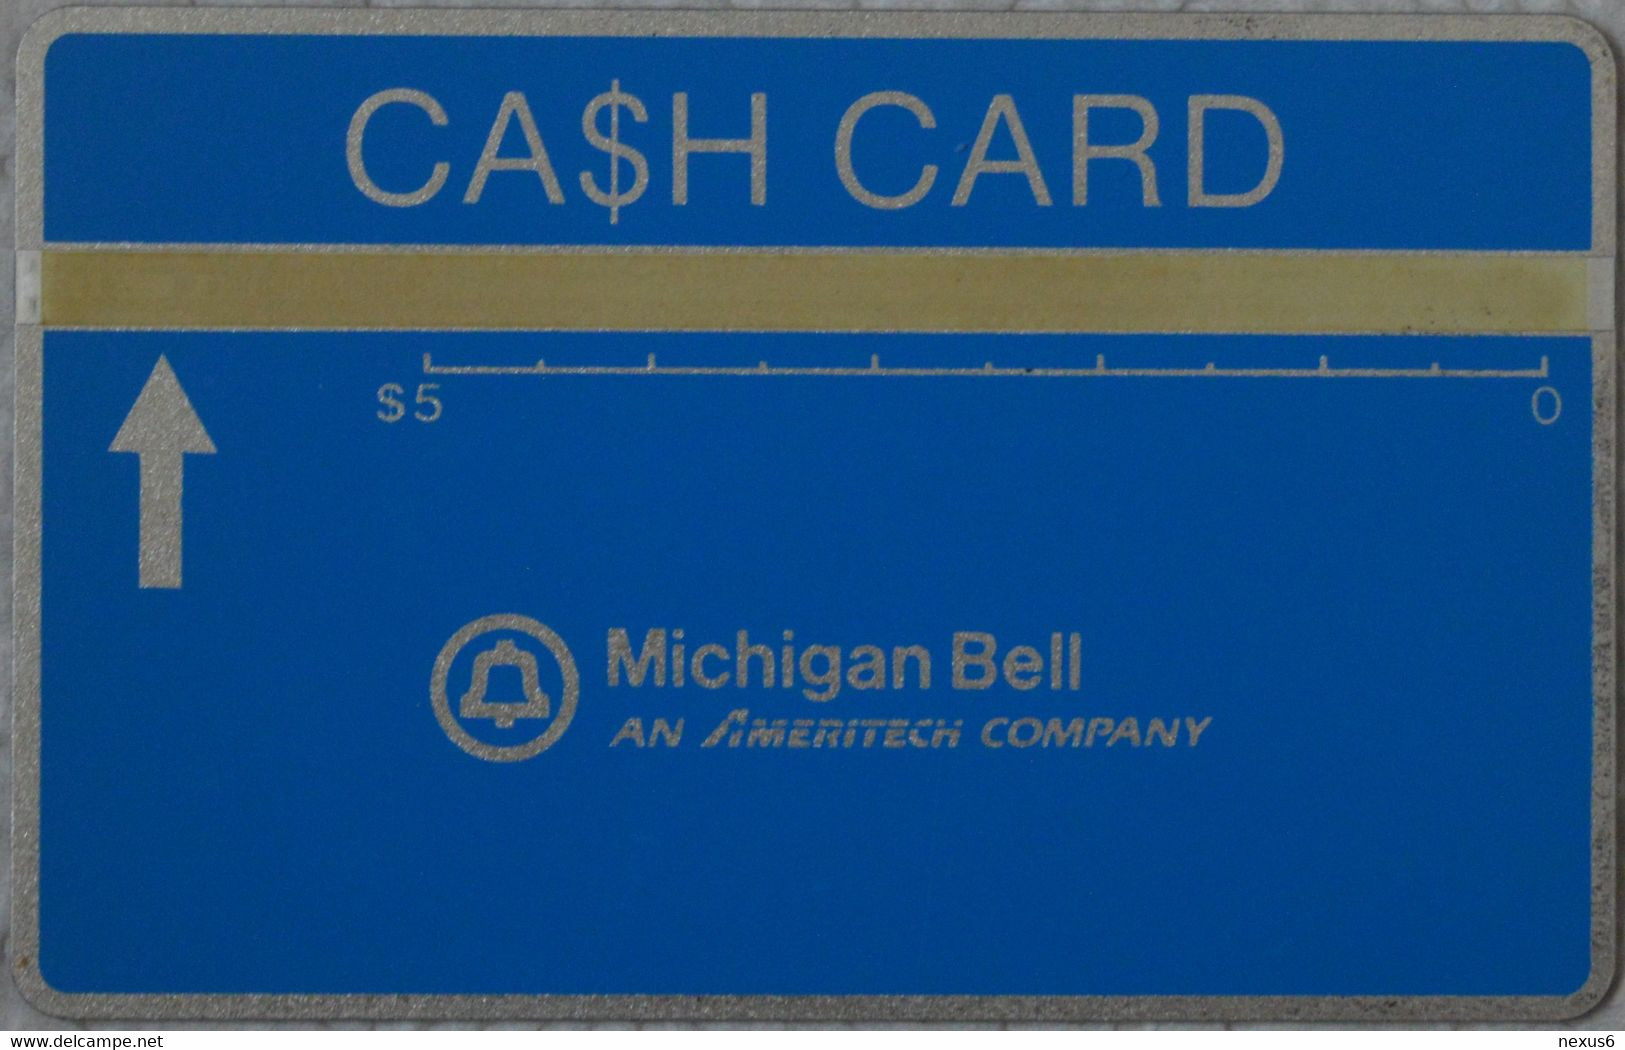 USA (Michigan Bell) - L&G - Cash Card Blue, Cn. 707B - 07.1987, 5$, 10.000ex, Mint - [1] Hologrammkarten (Landis & Gyr)